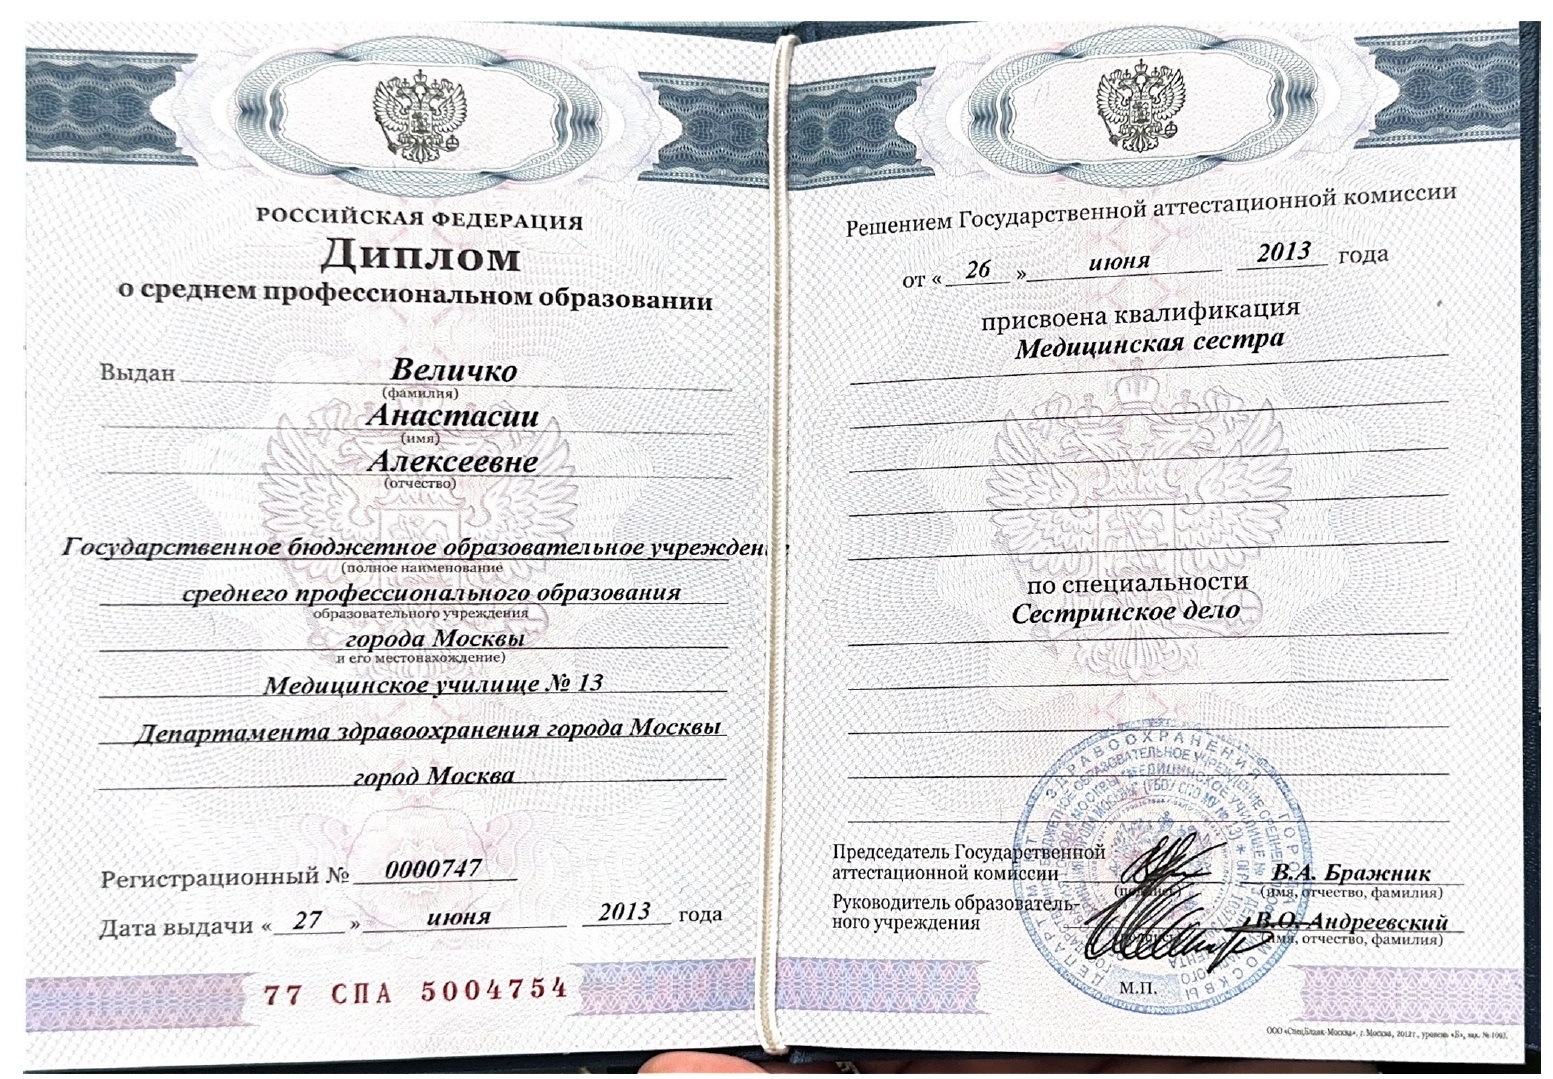 величко-сертификат-1